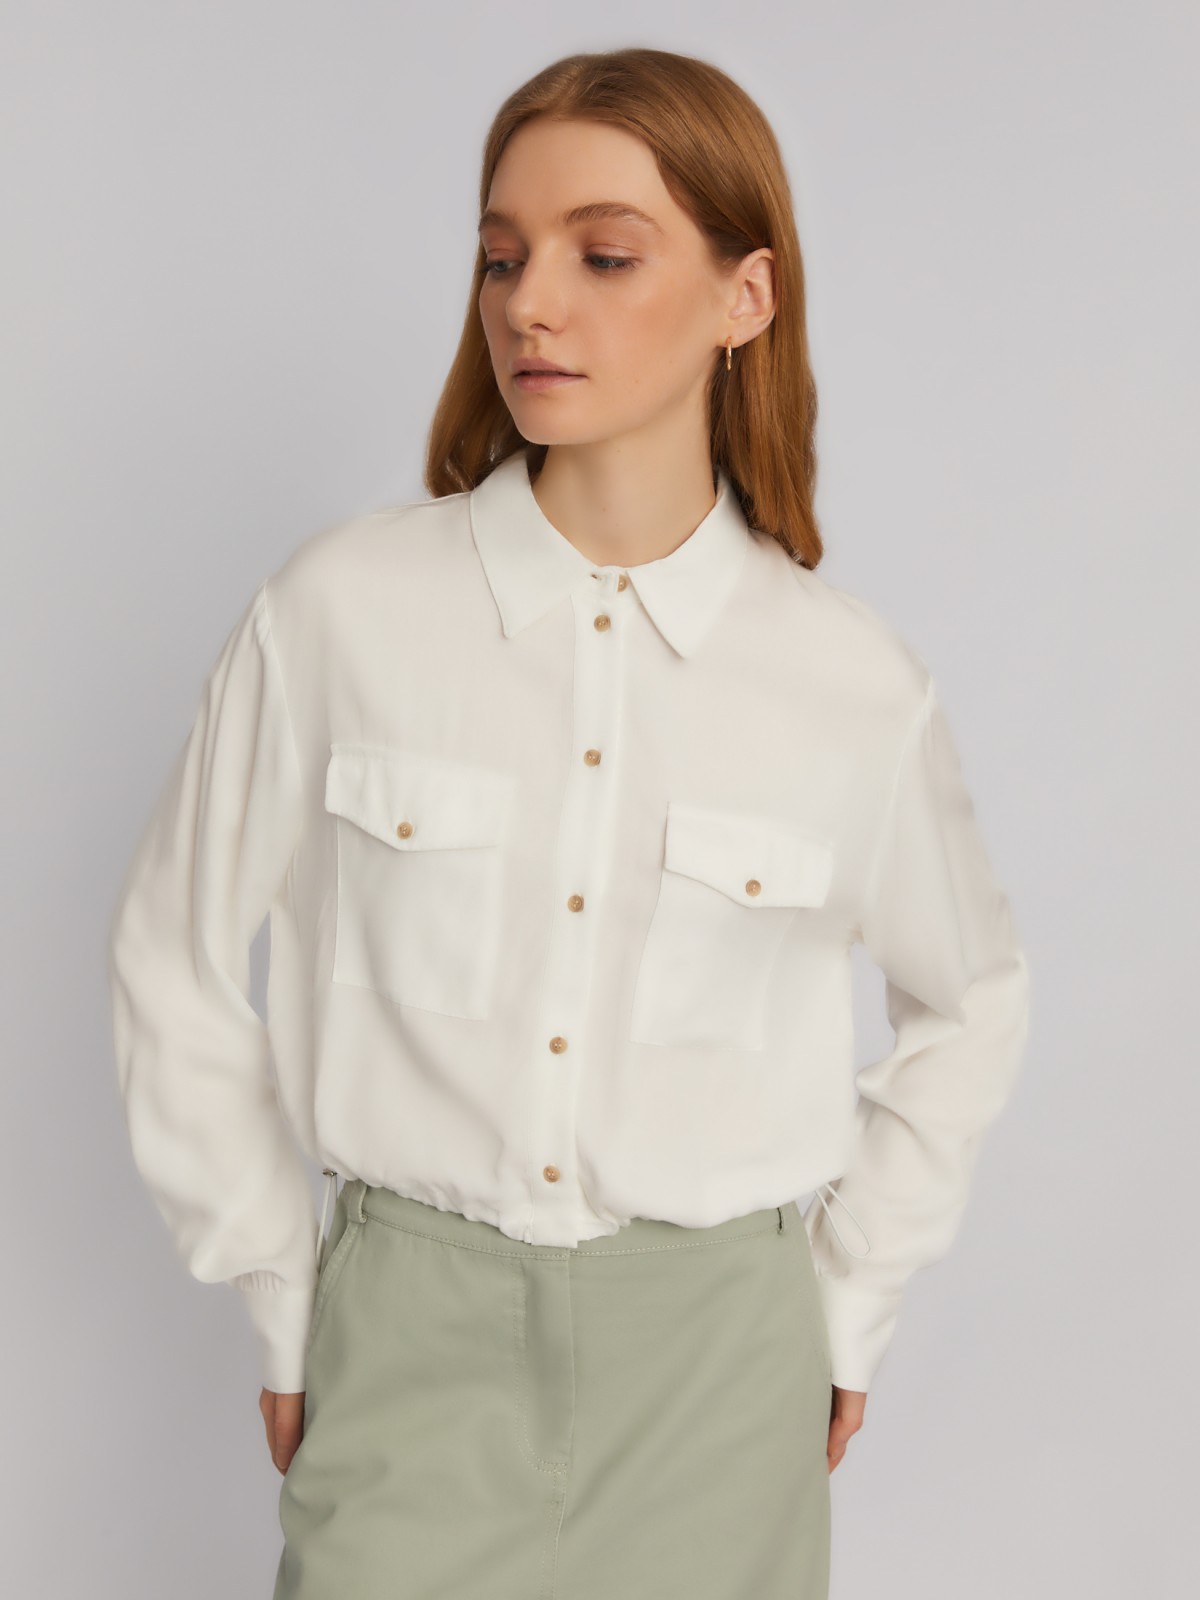 Блузка-рубашка из вискозы в спортивном стиле на кулиске zolla 02413114Y363, цвет молоко, размер XS - фото 3